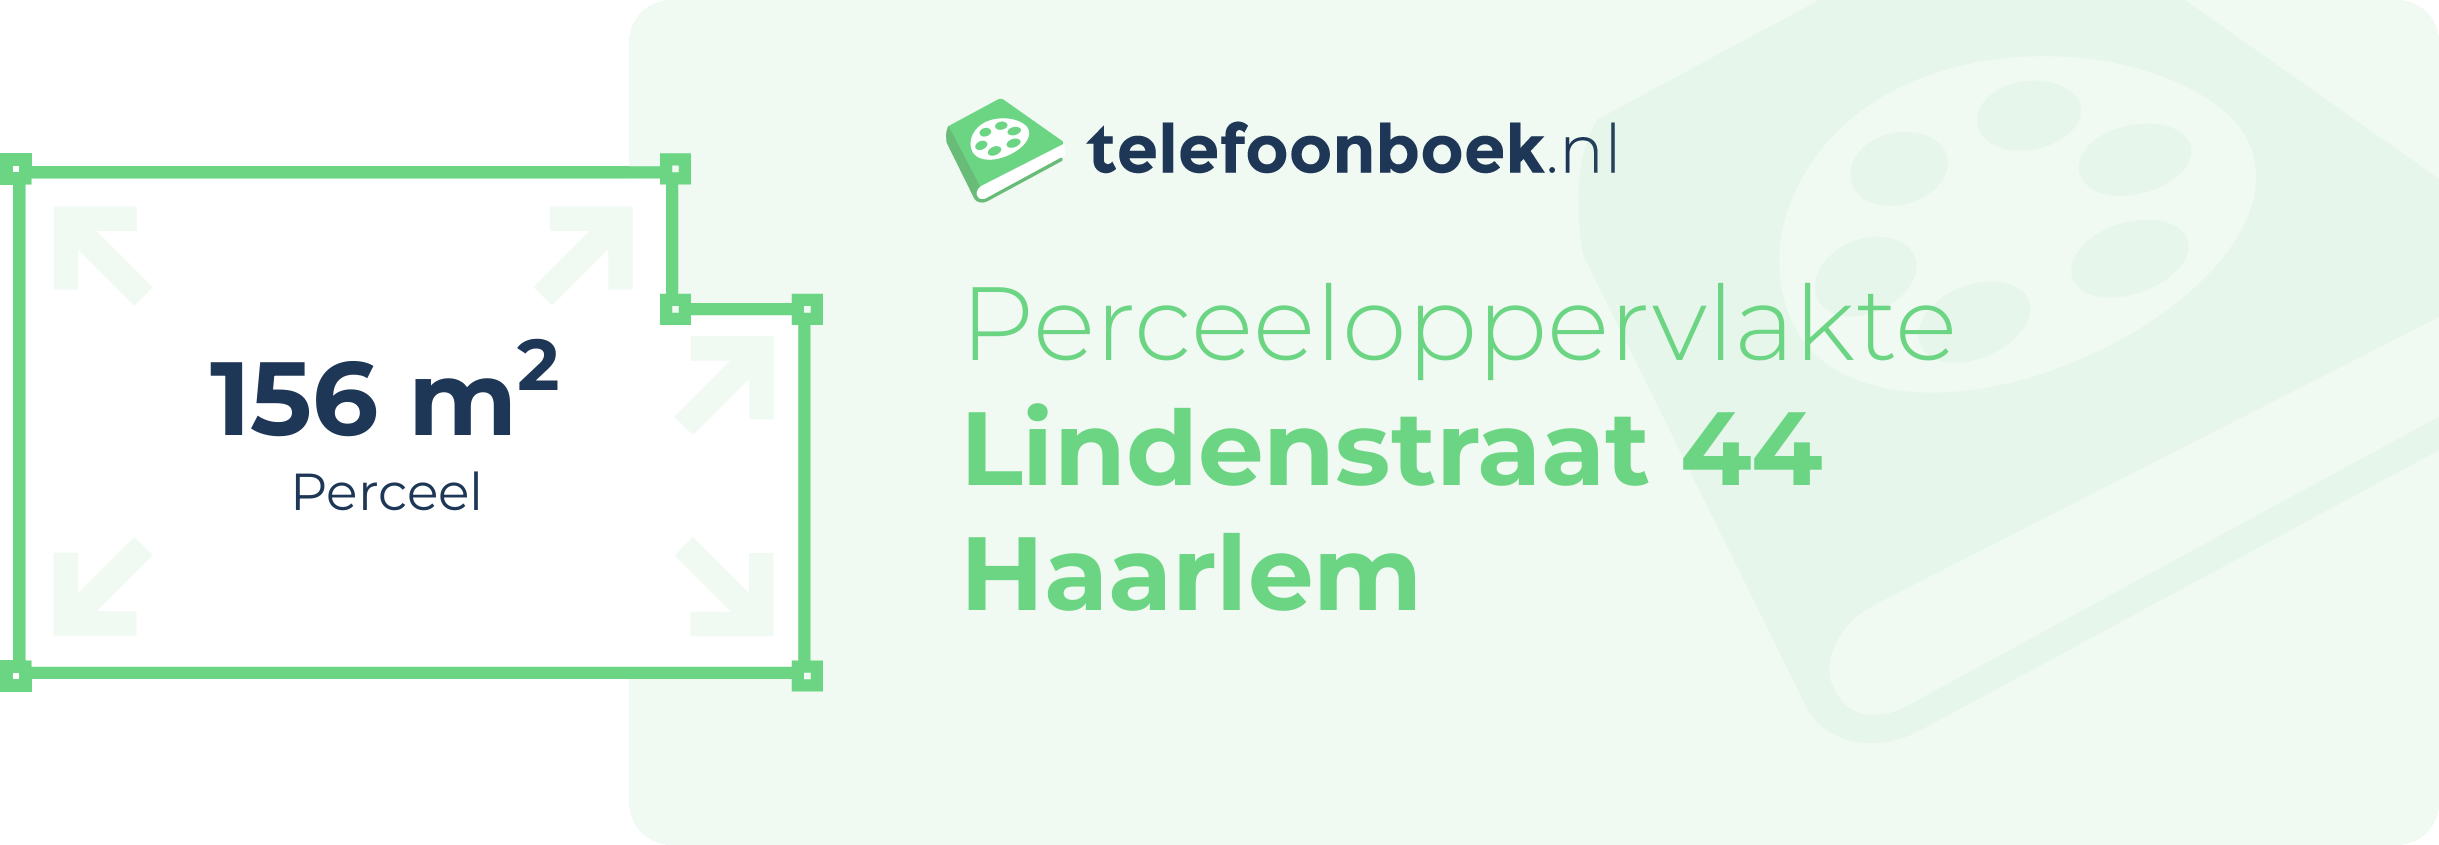 Perceeloppervlakte Lindenstraat 44 Haarlem